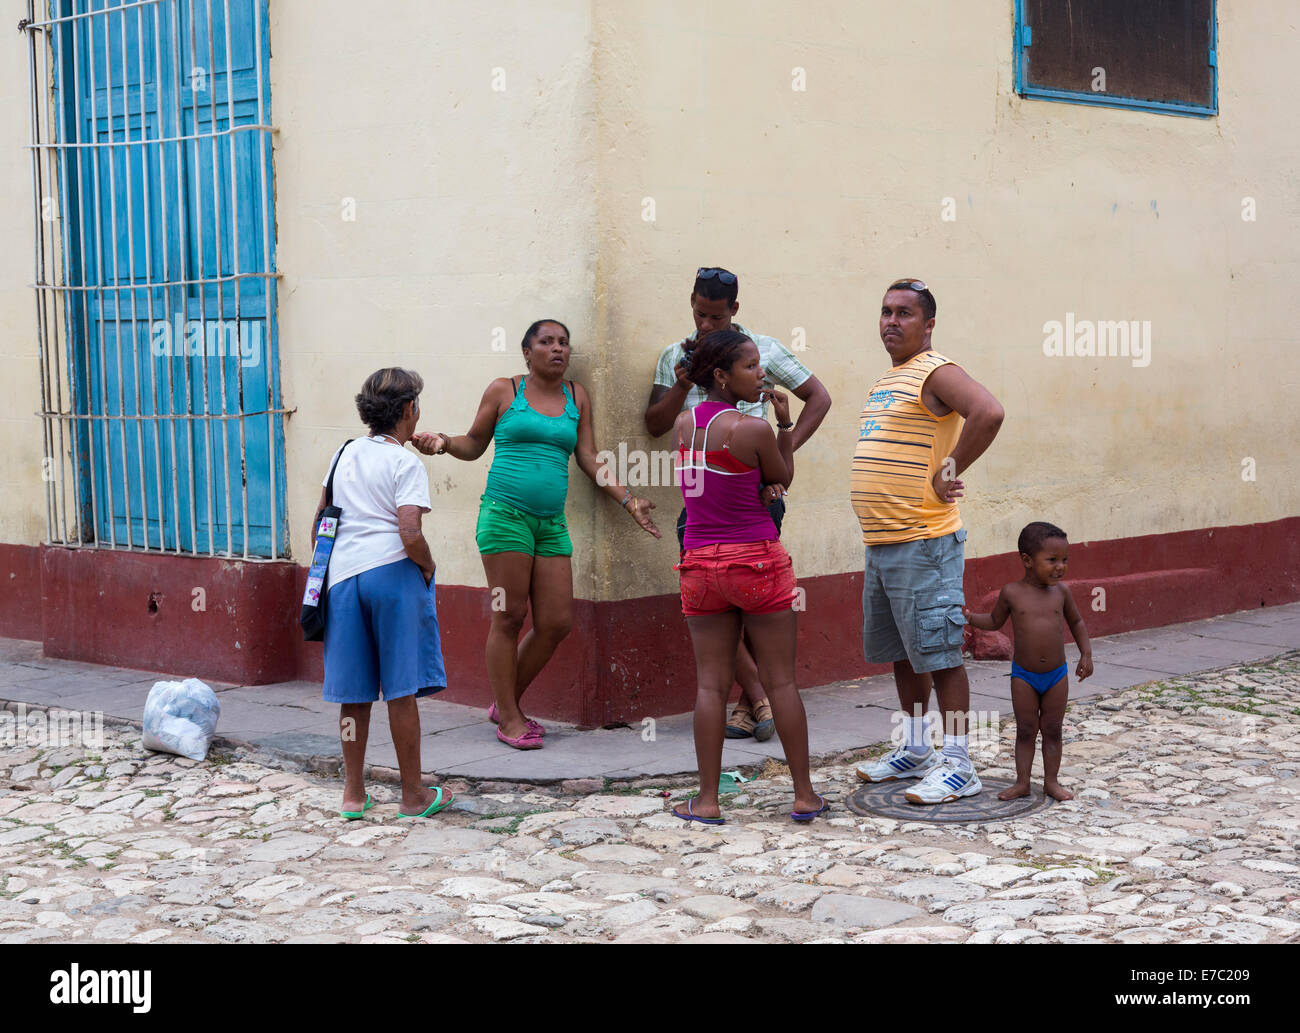 Los cubanos hablando, en la esquina de la calle Trinidad, Cuba Foto de stock